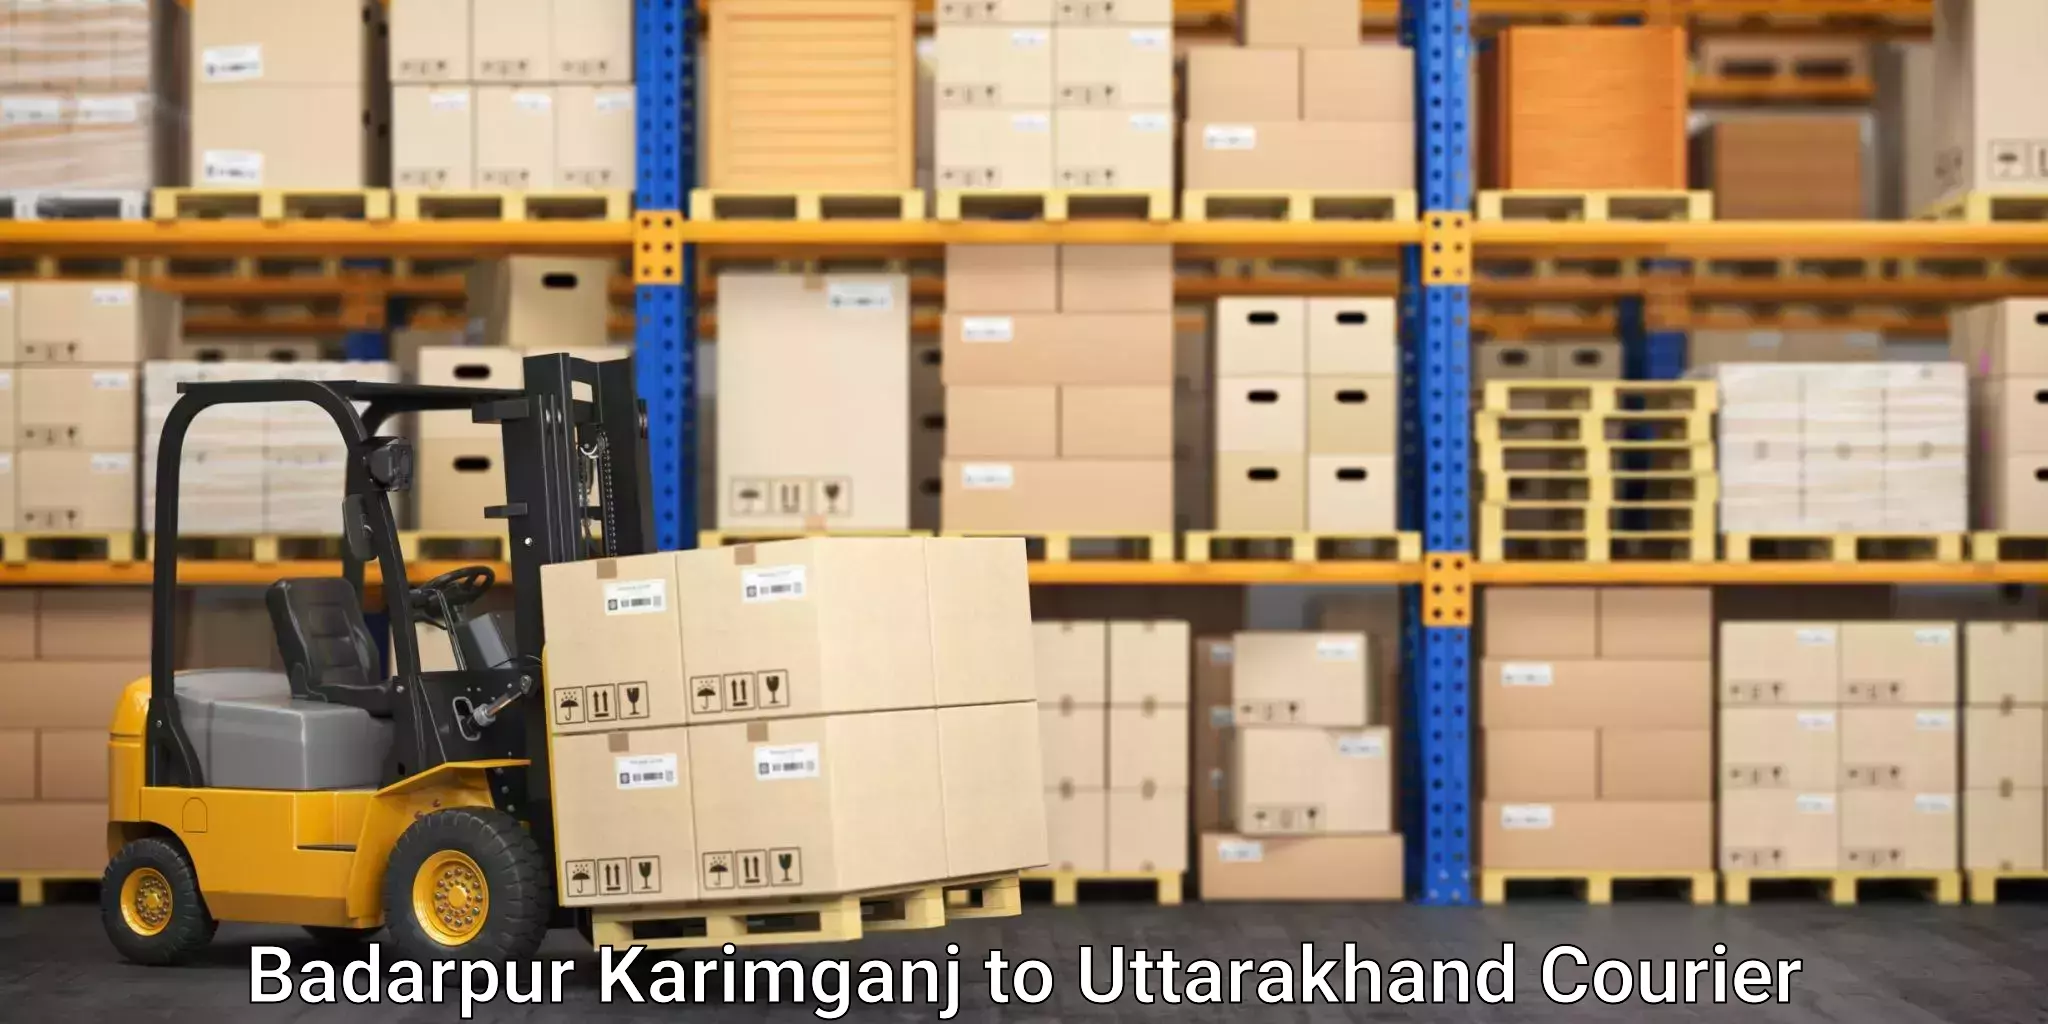 Package delivery network Badarpur Karimganj to Uttarakhand